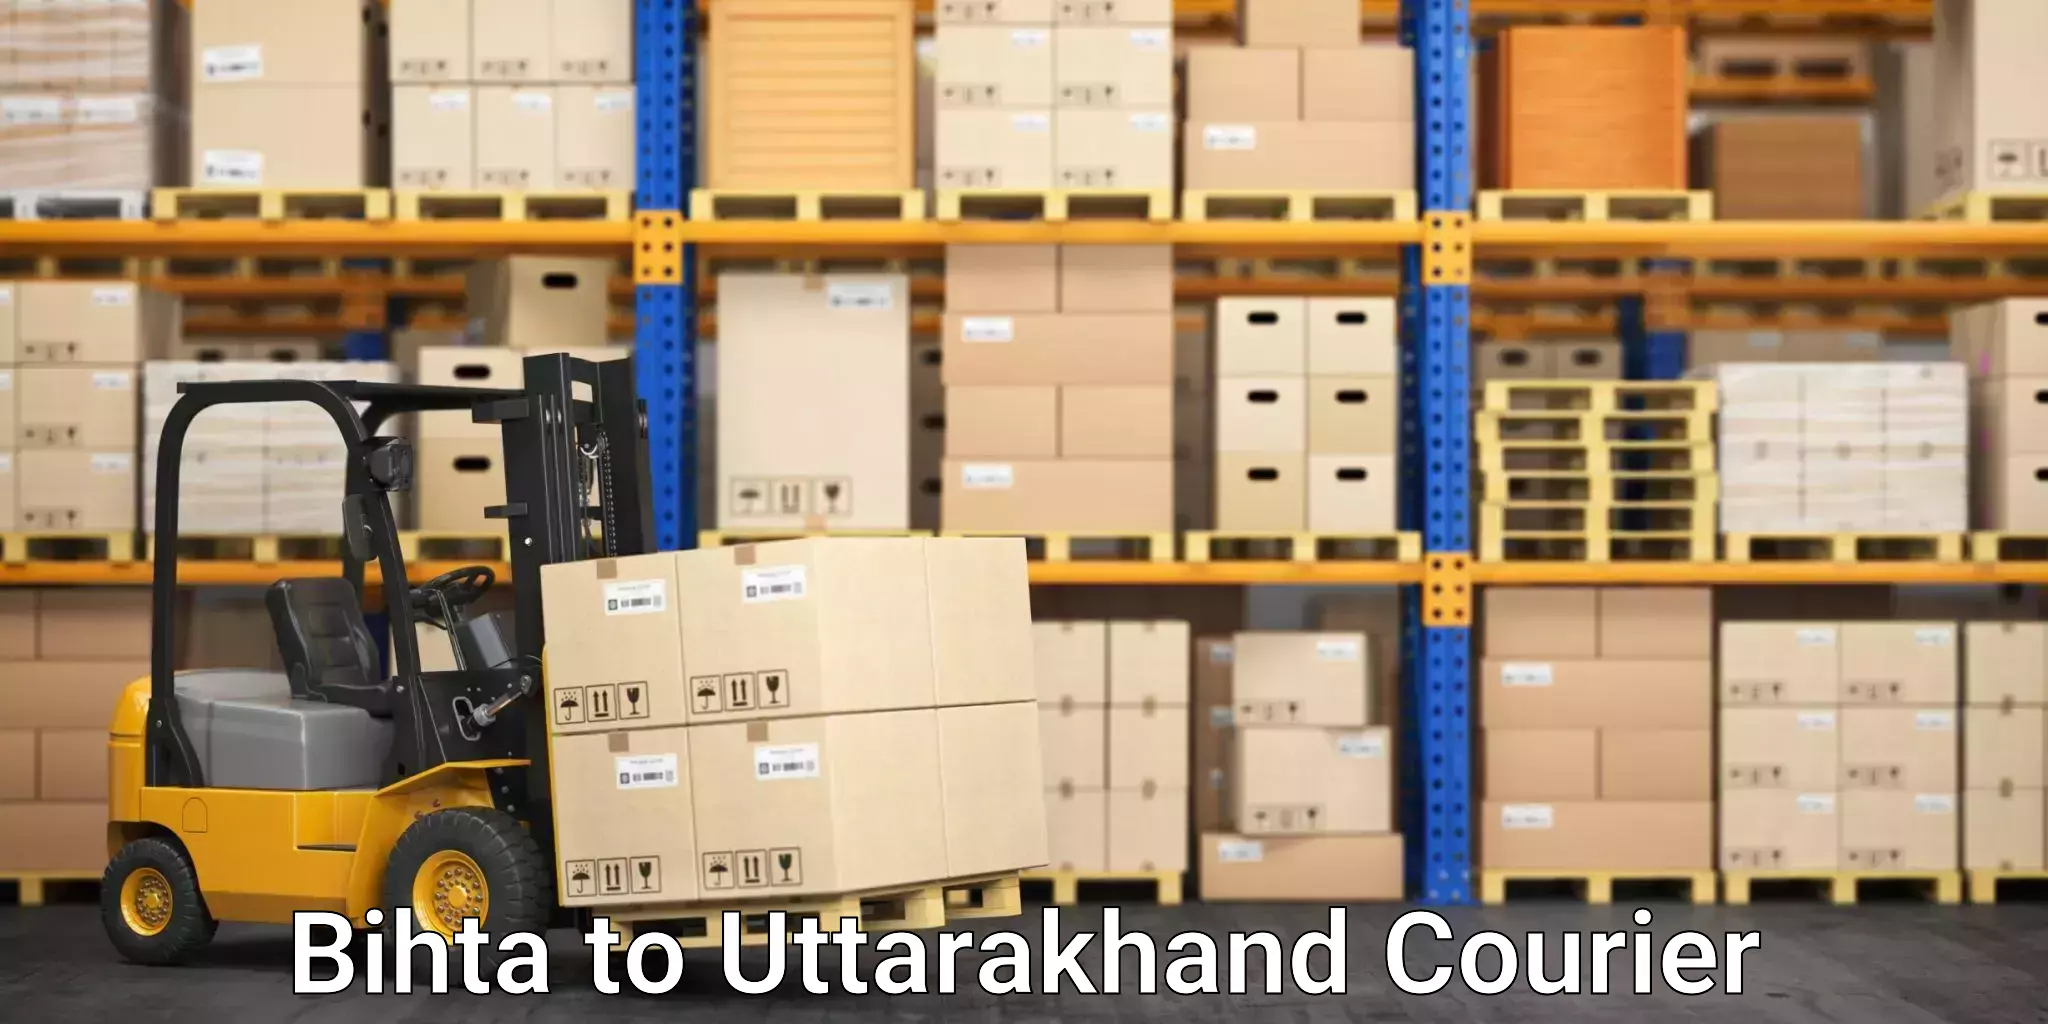 Custom moving plans in Bihta to Uttarakhand